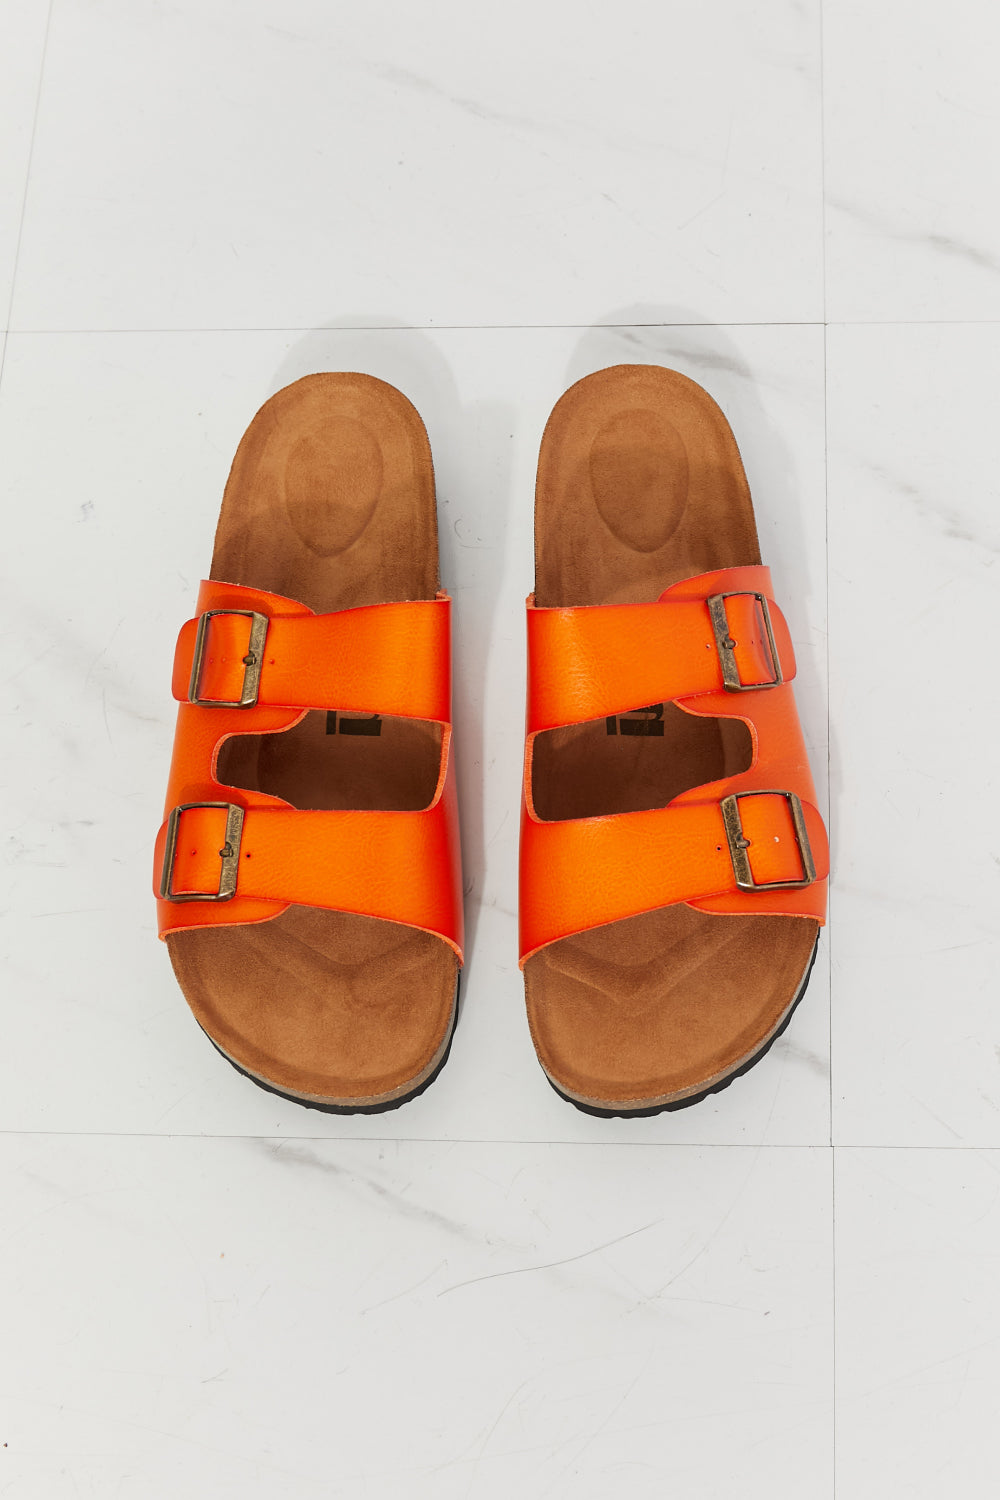 Feeling Alive Double Banded Slide Sandals in Orange - Copper + Rose